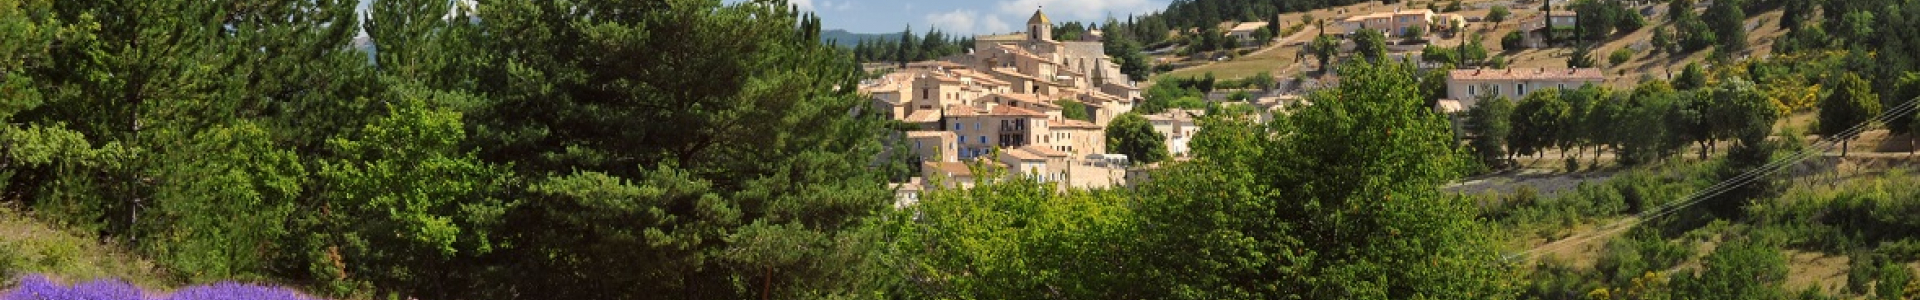 Vaucluse Tourisme : hébergements en exclusivité pour les festivals d'août